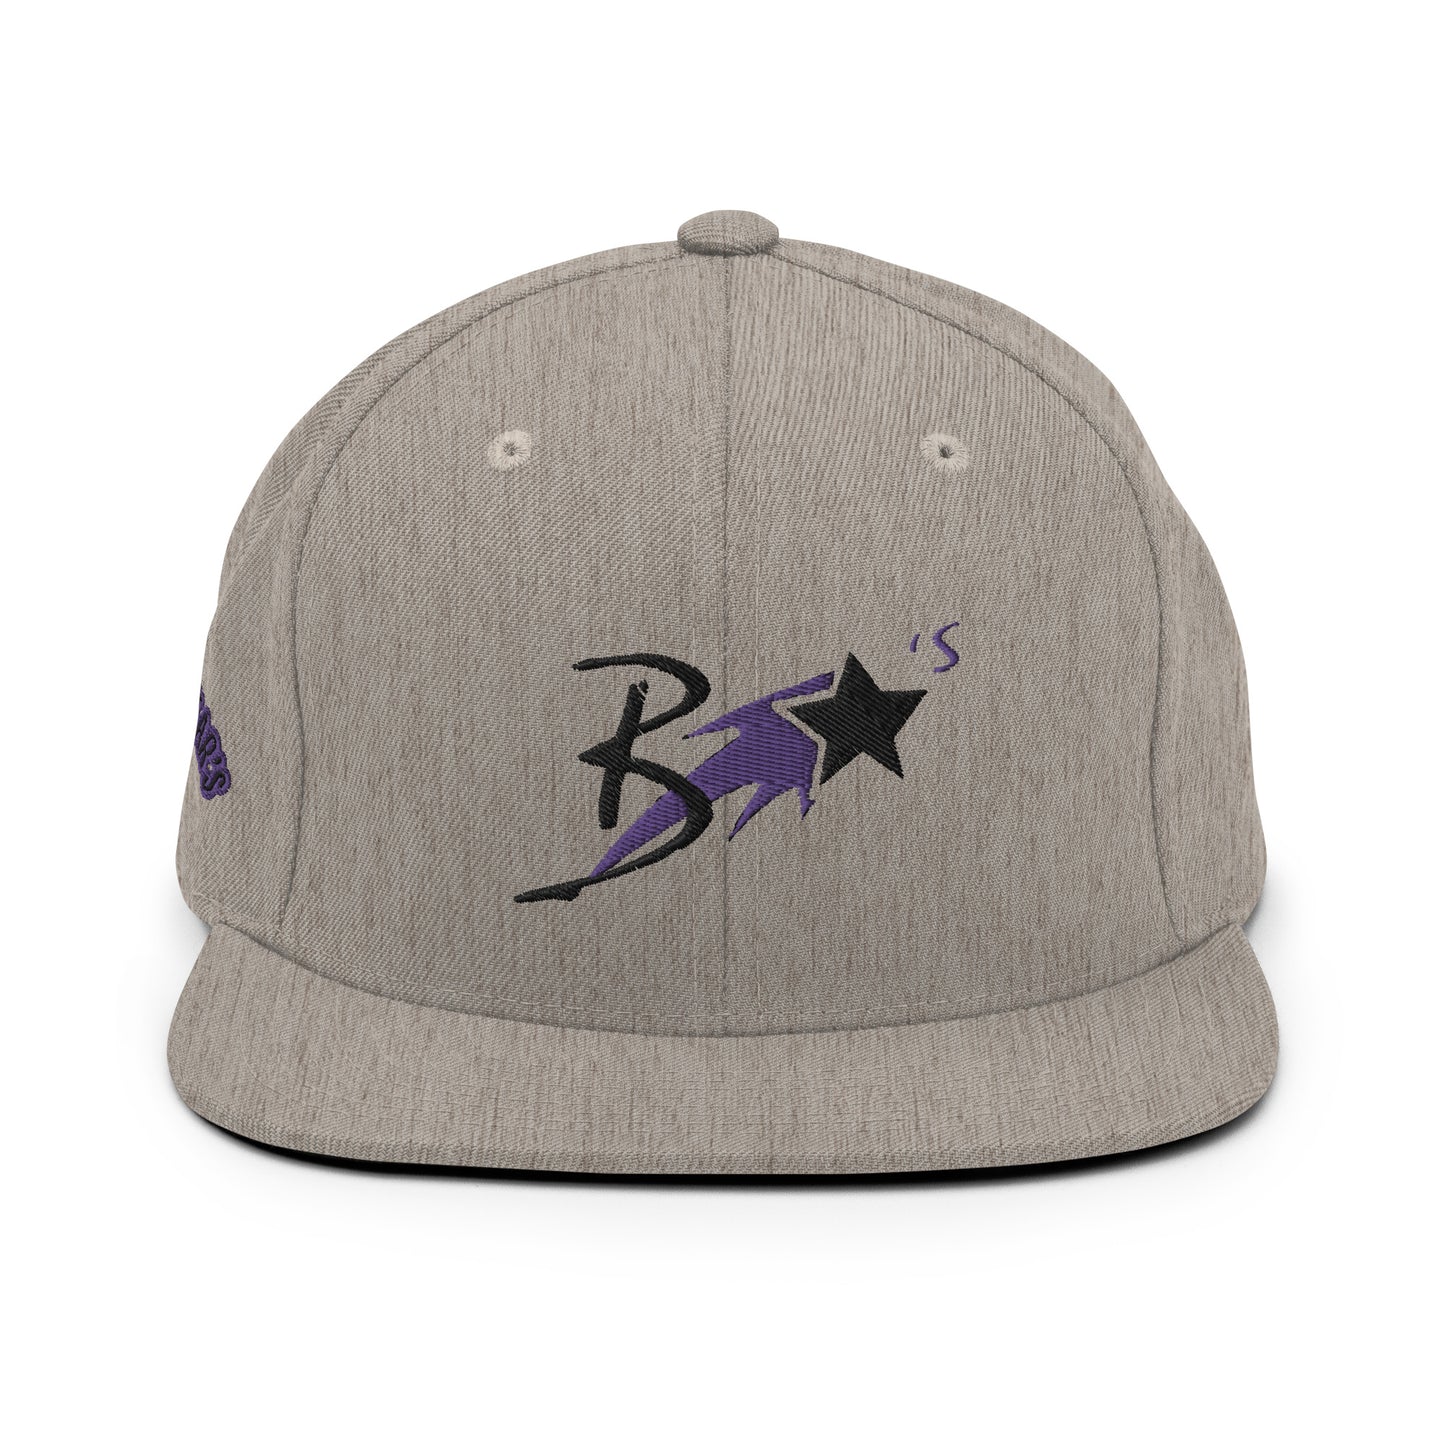 Blcak Star's Snapback Hat